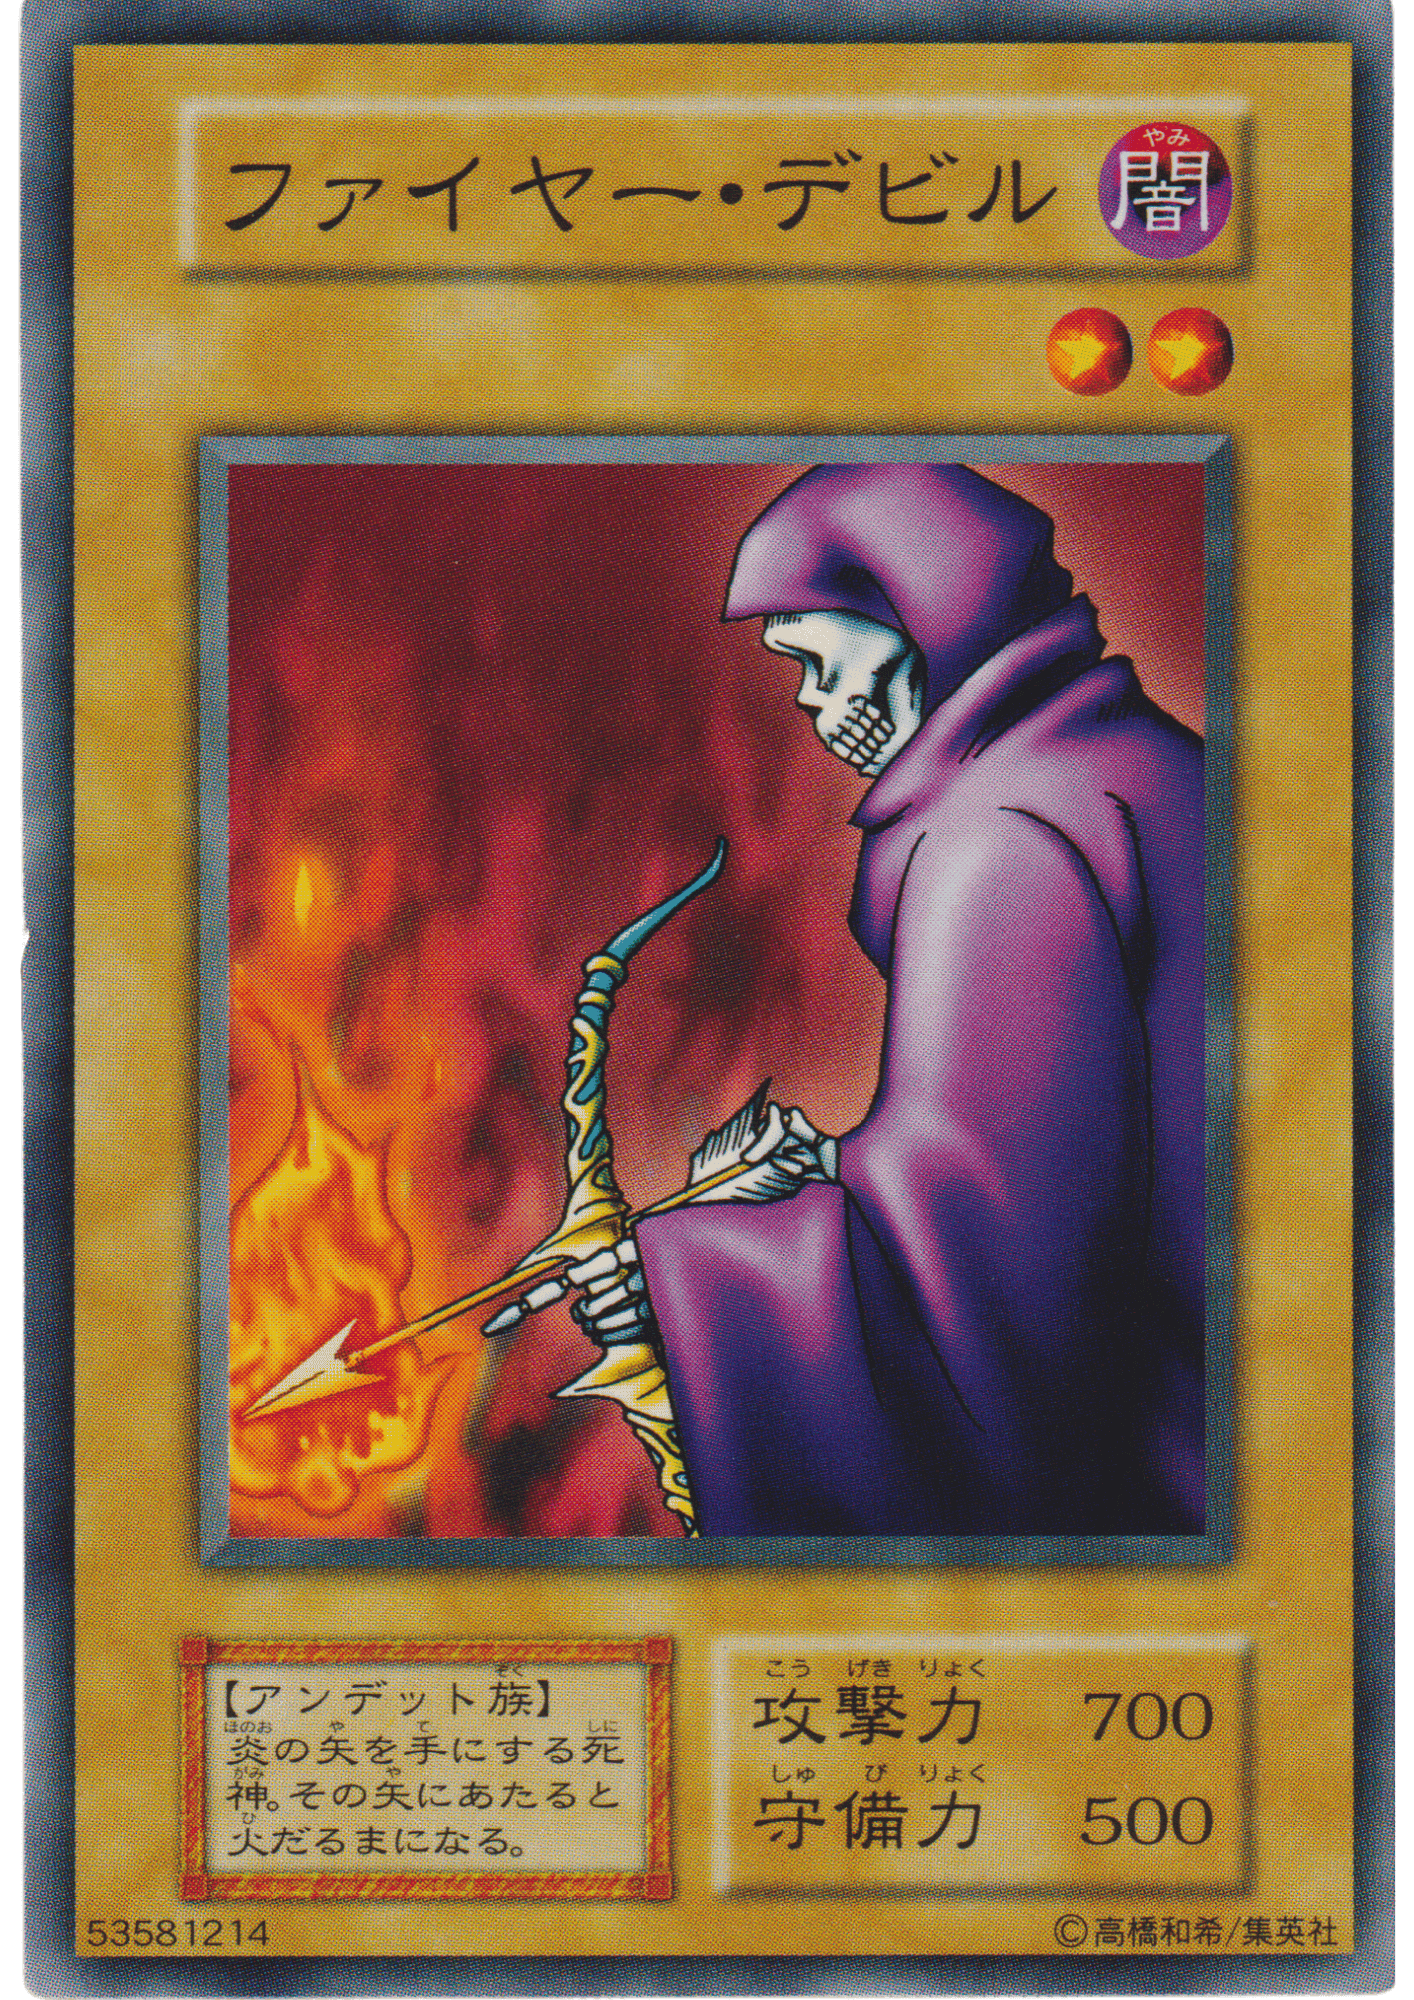 Fire Reaper 53581214 (No Ref) | Vol.1 ChitoroShop